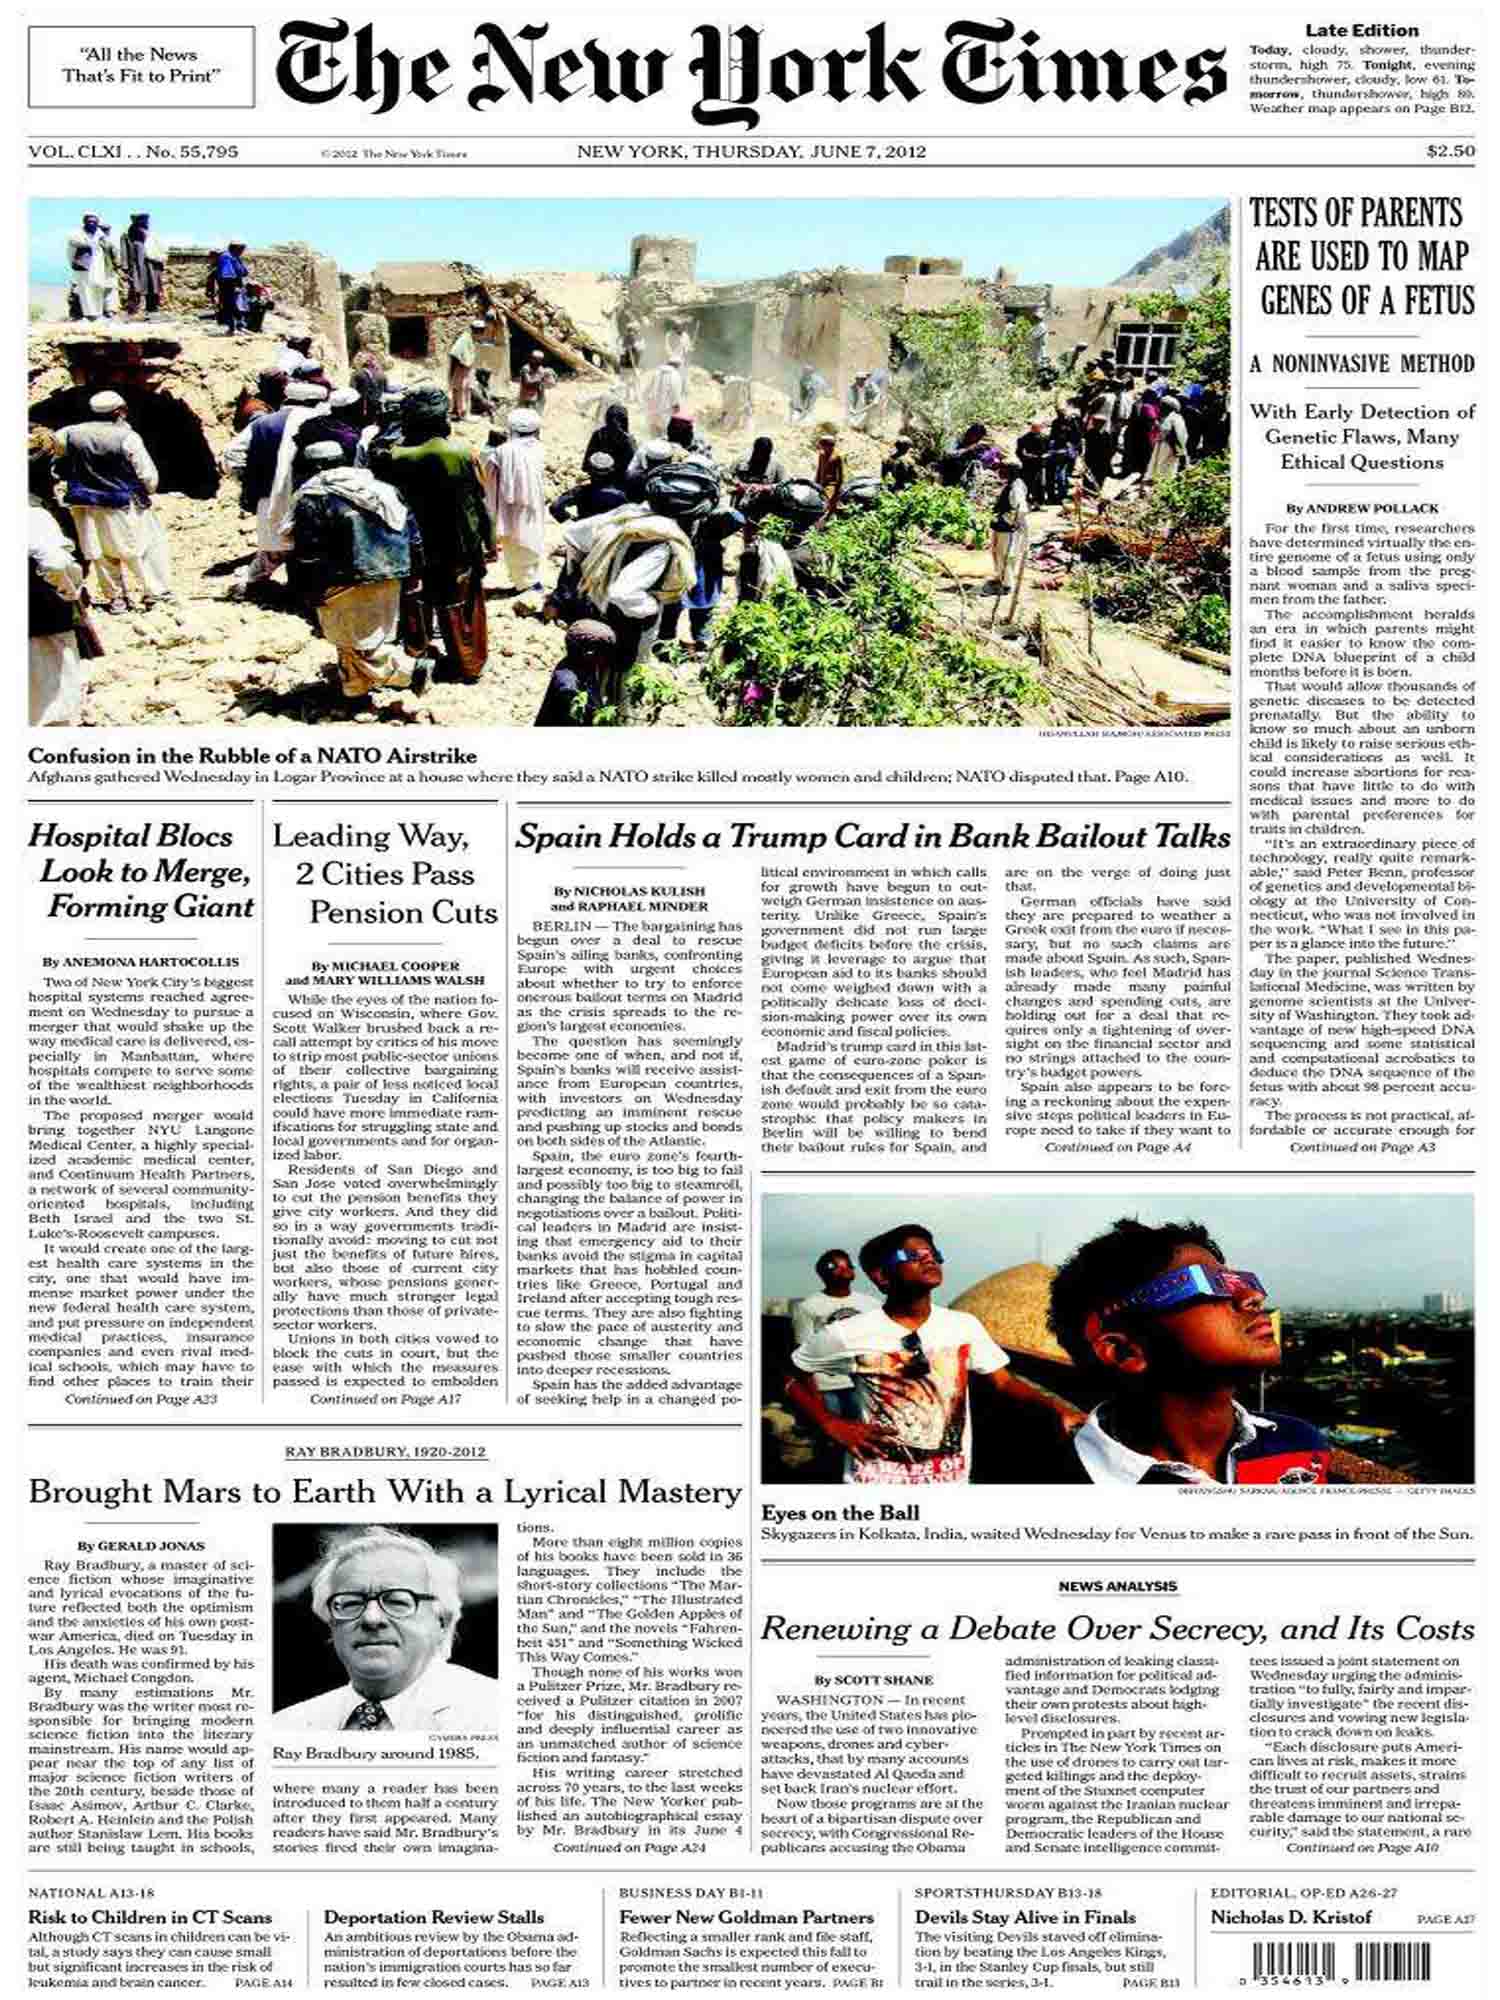 2012 금성 태양면 통과 뉴욕 타임스